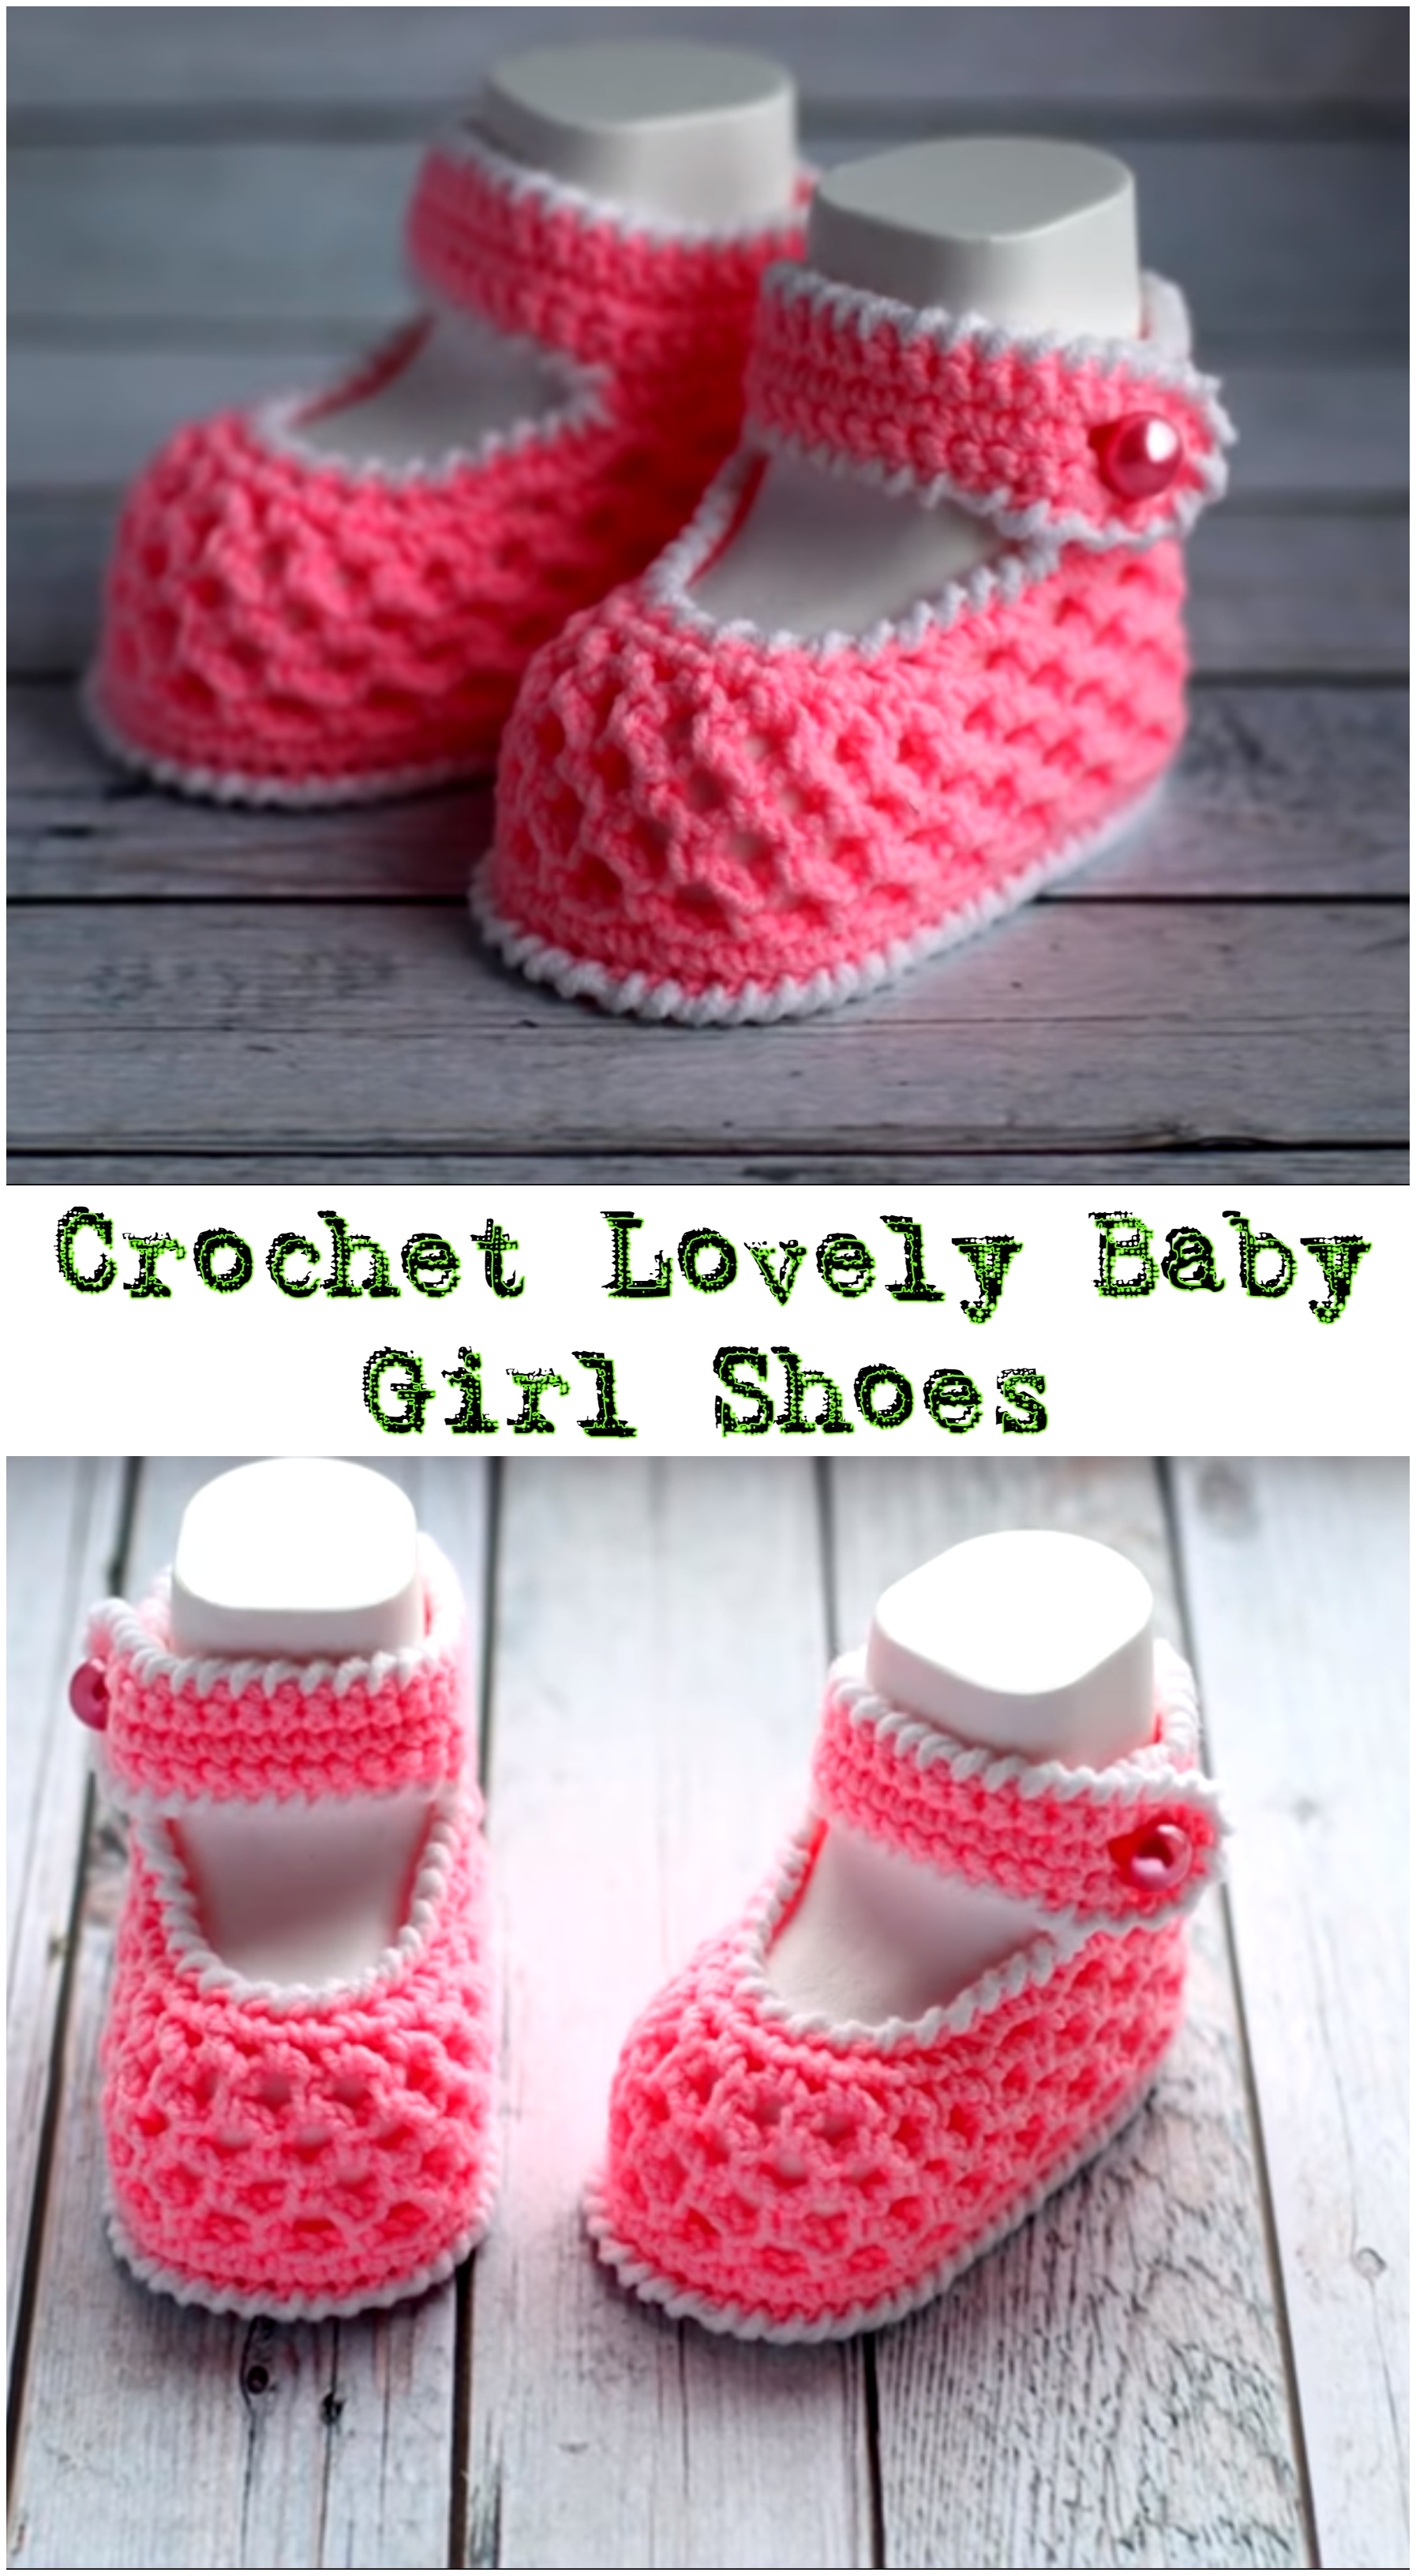 Crochet Lovely Baby Girl Shoes